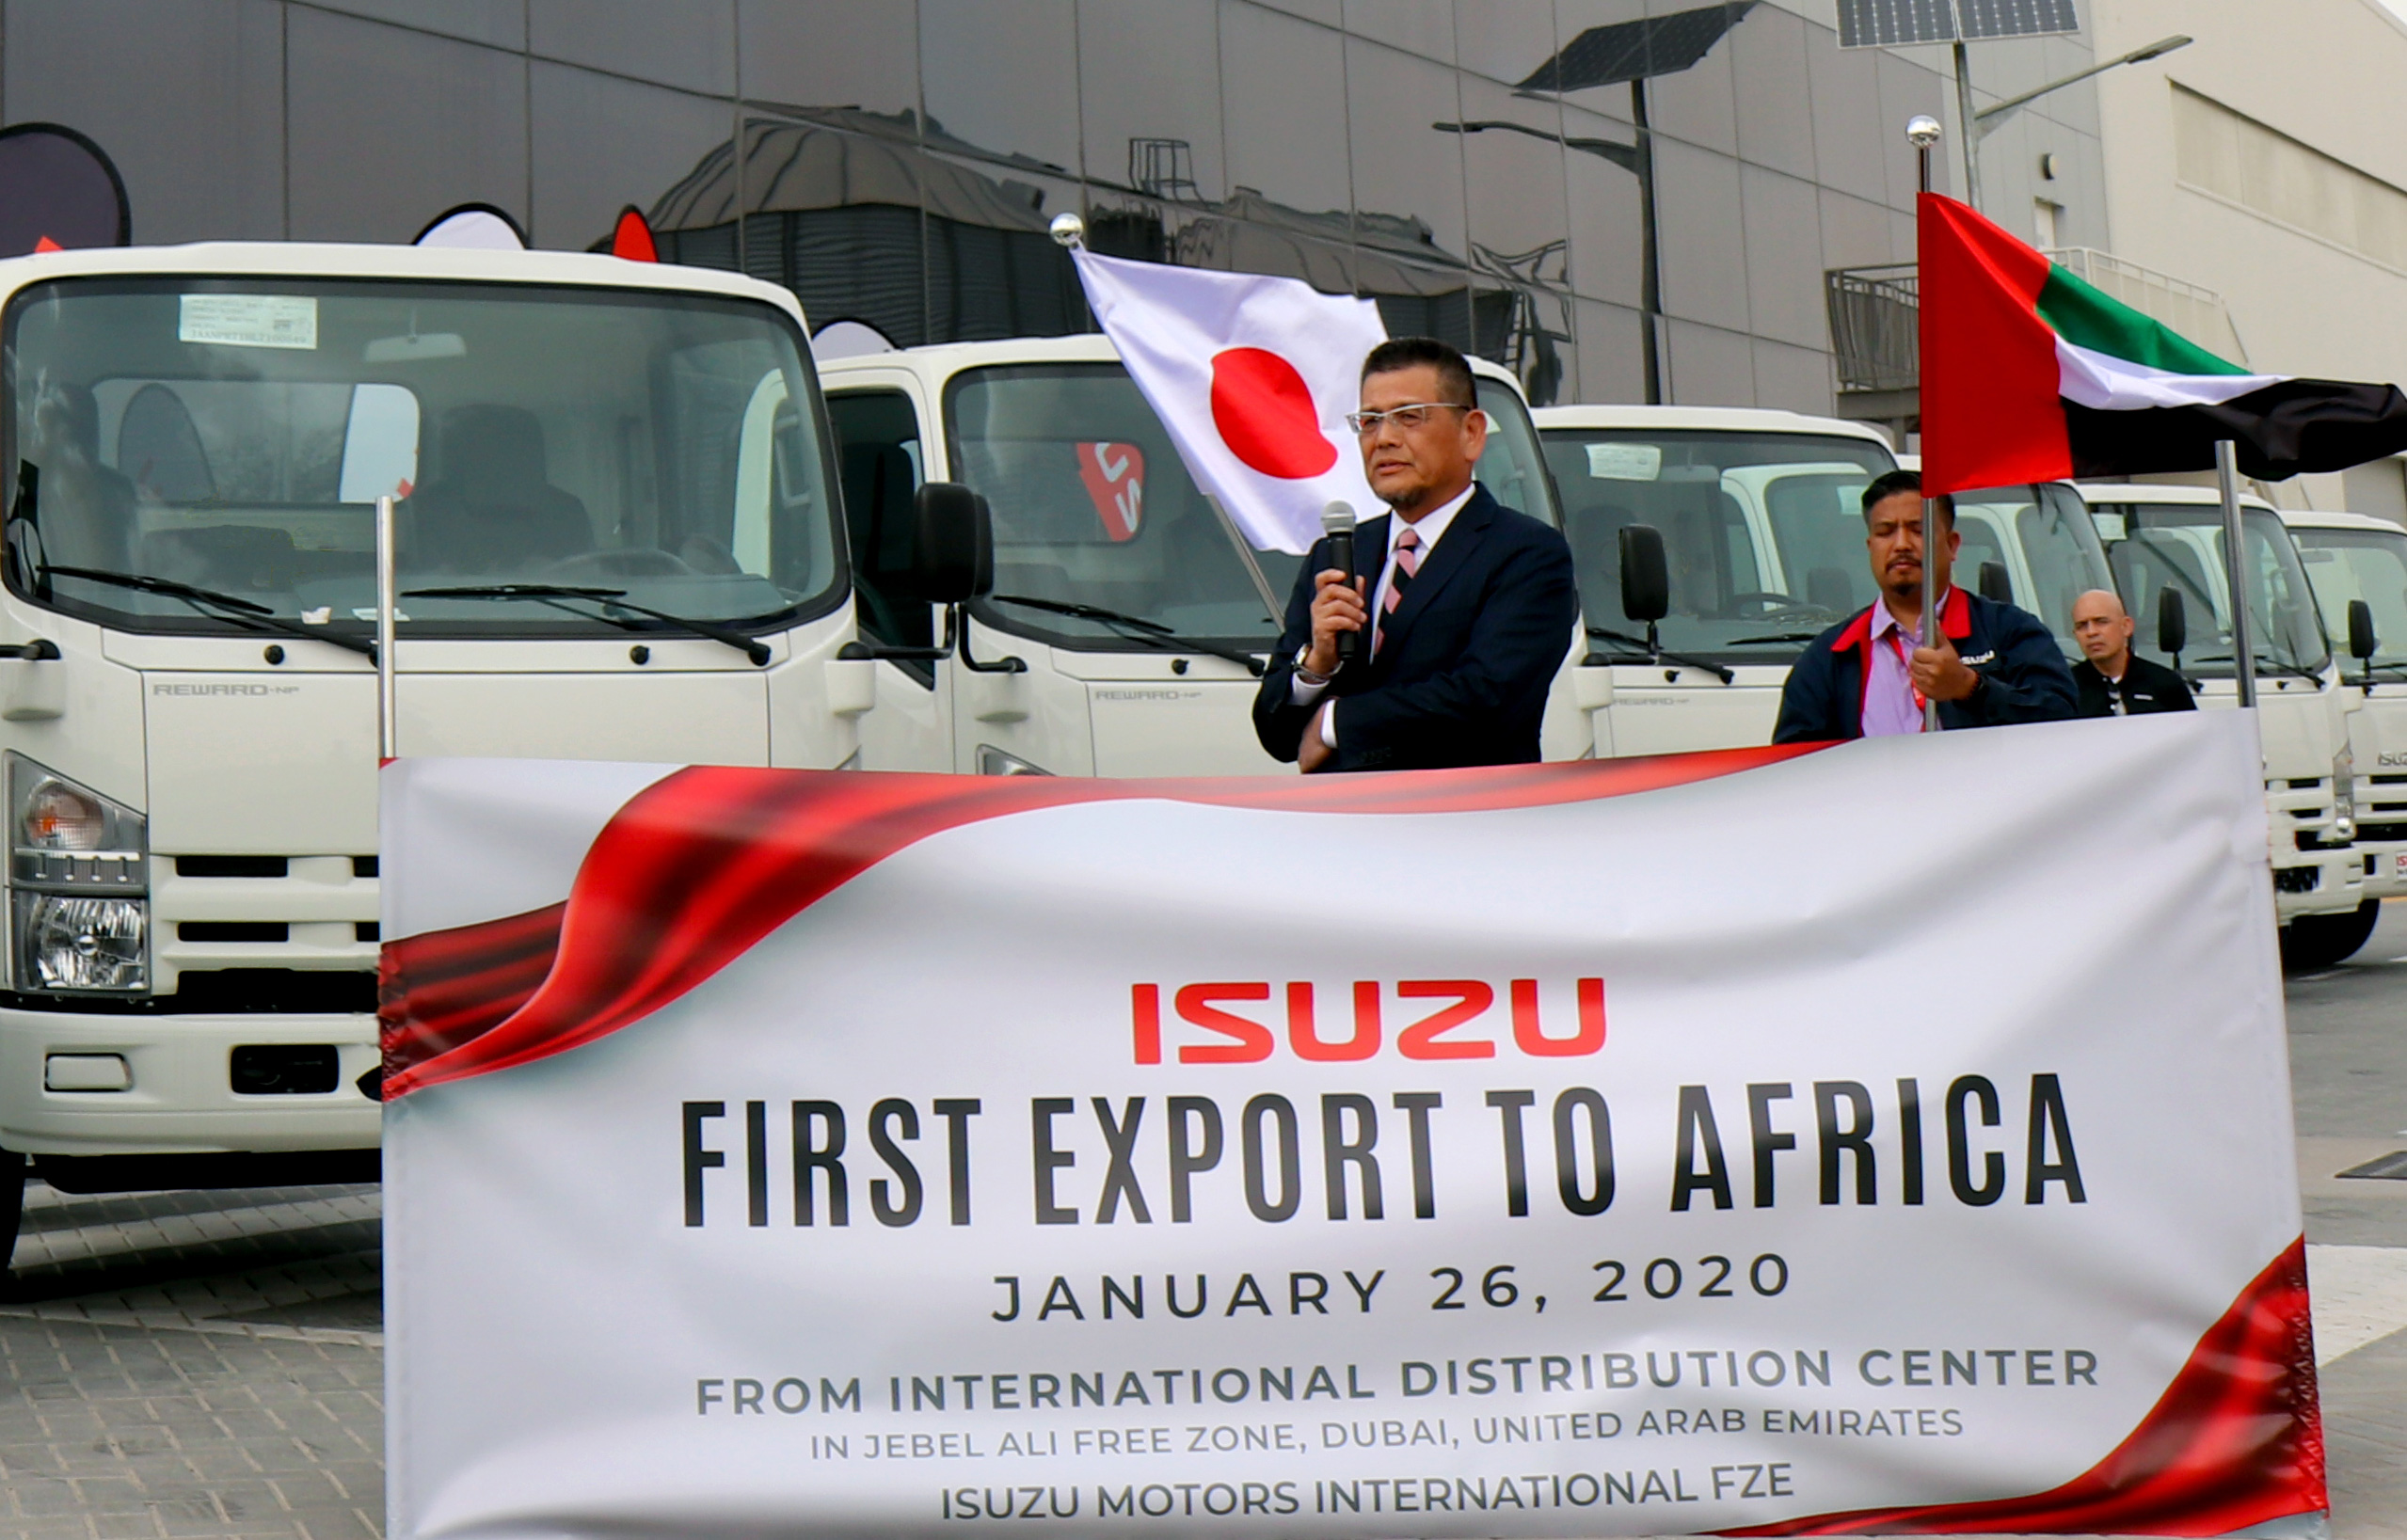 Isuzu First Export to Africa - Speech Opening